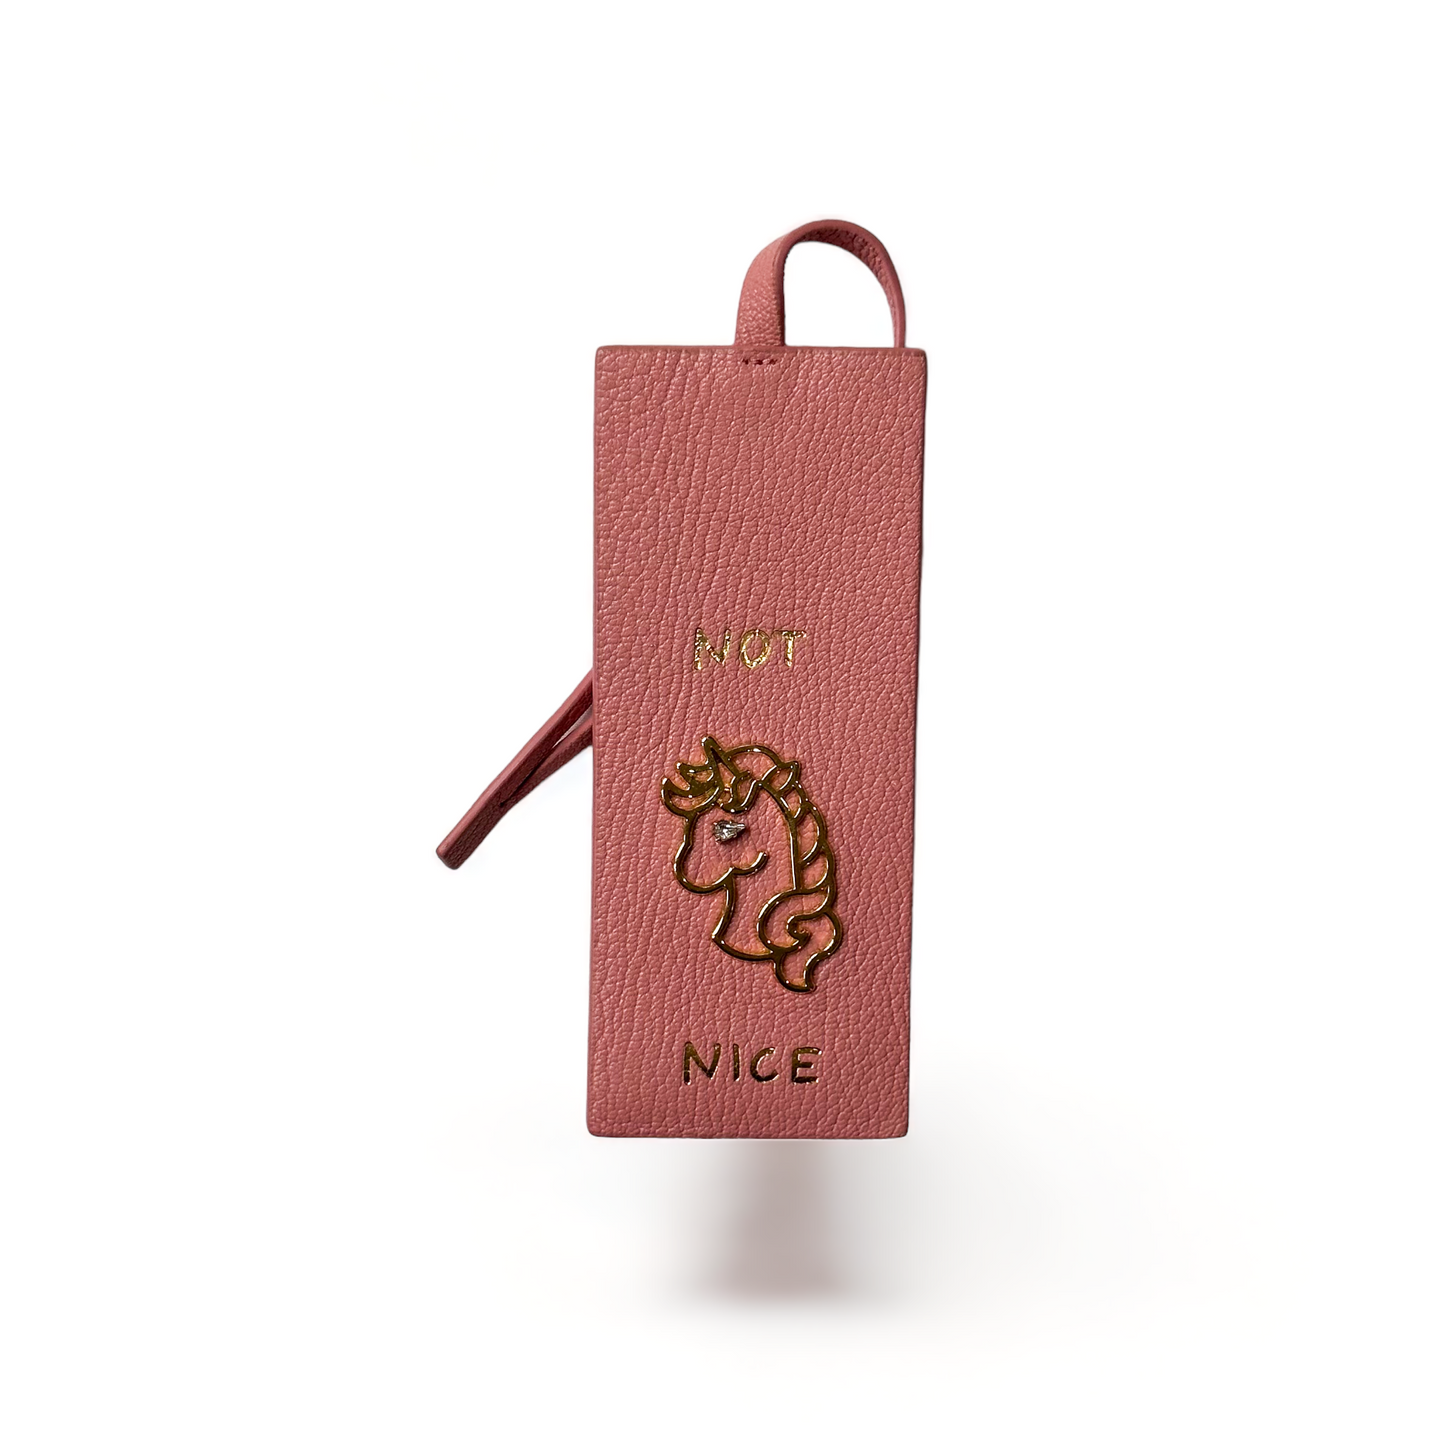 Miu-Miu Bag Charm